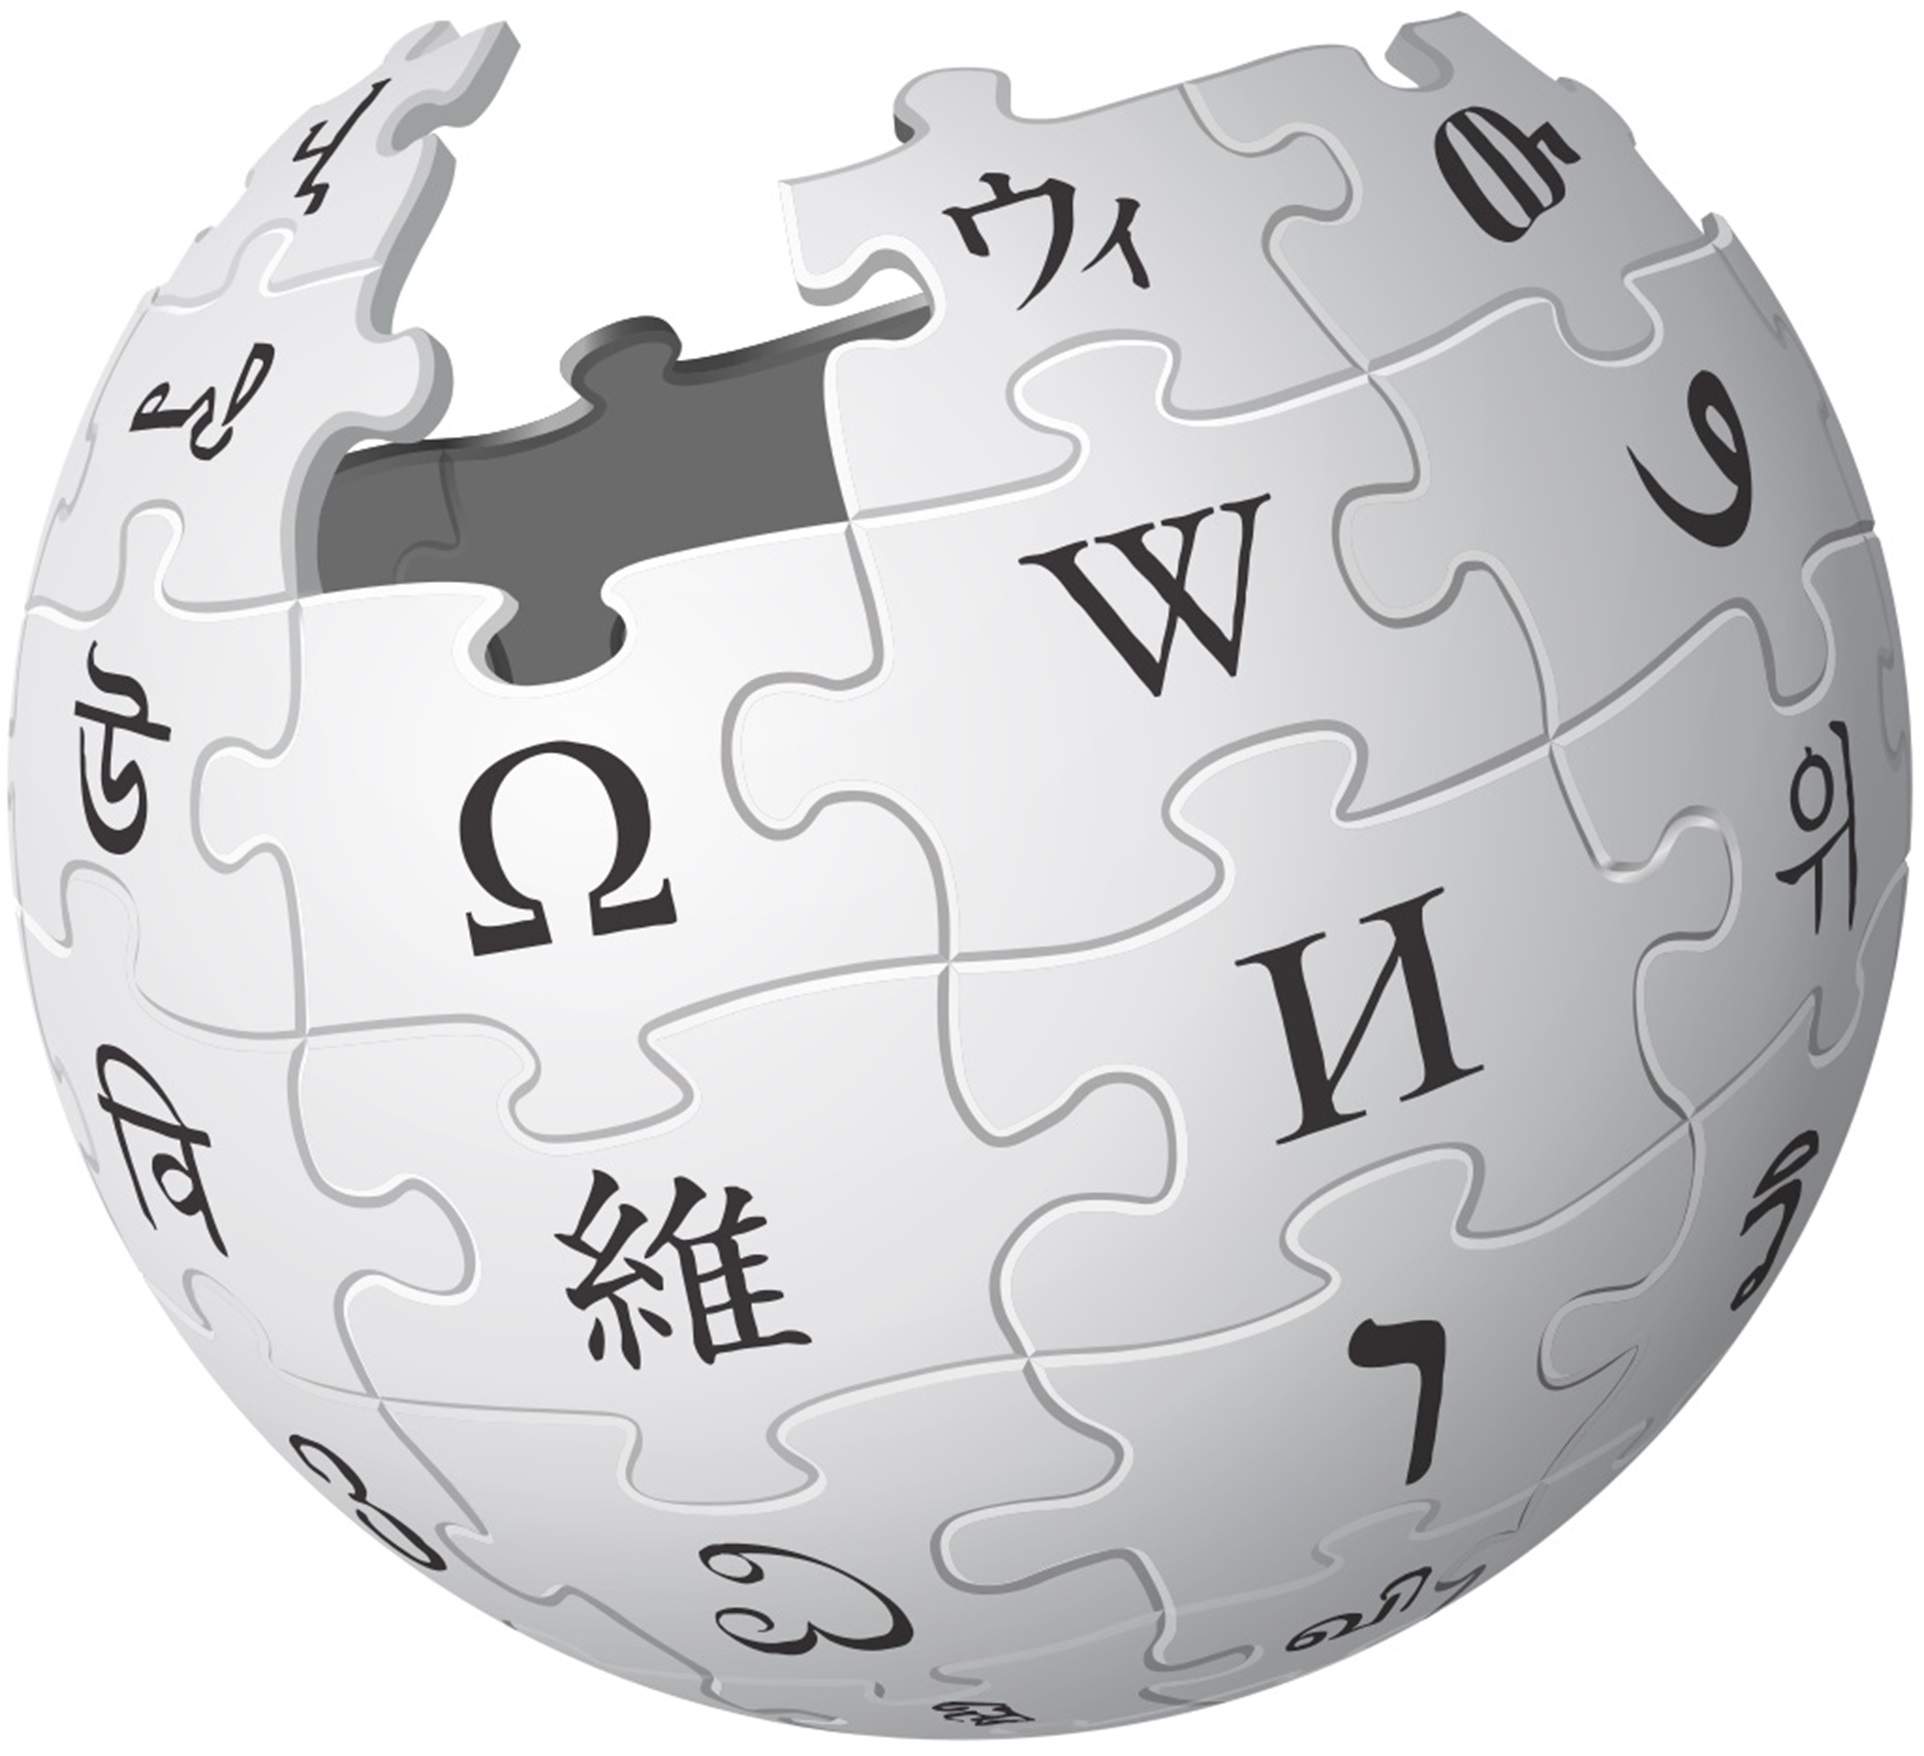 L'edició en català de la Viquipèdia, la quarta del món amb més articles de qualitat